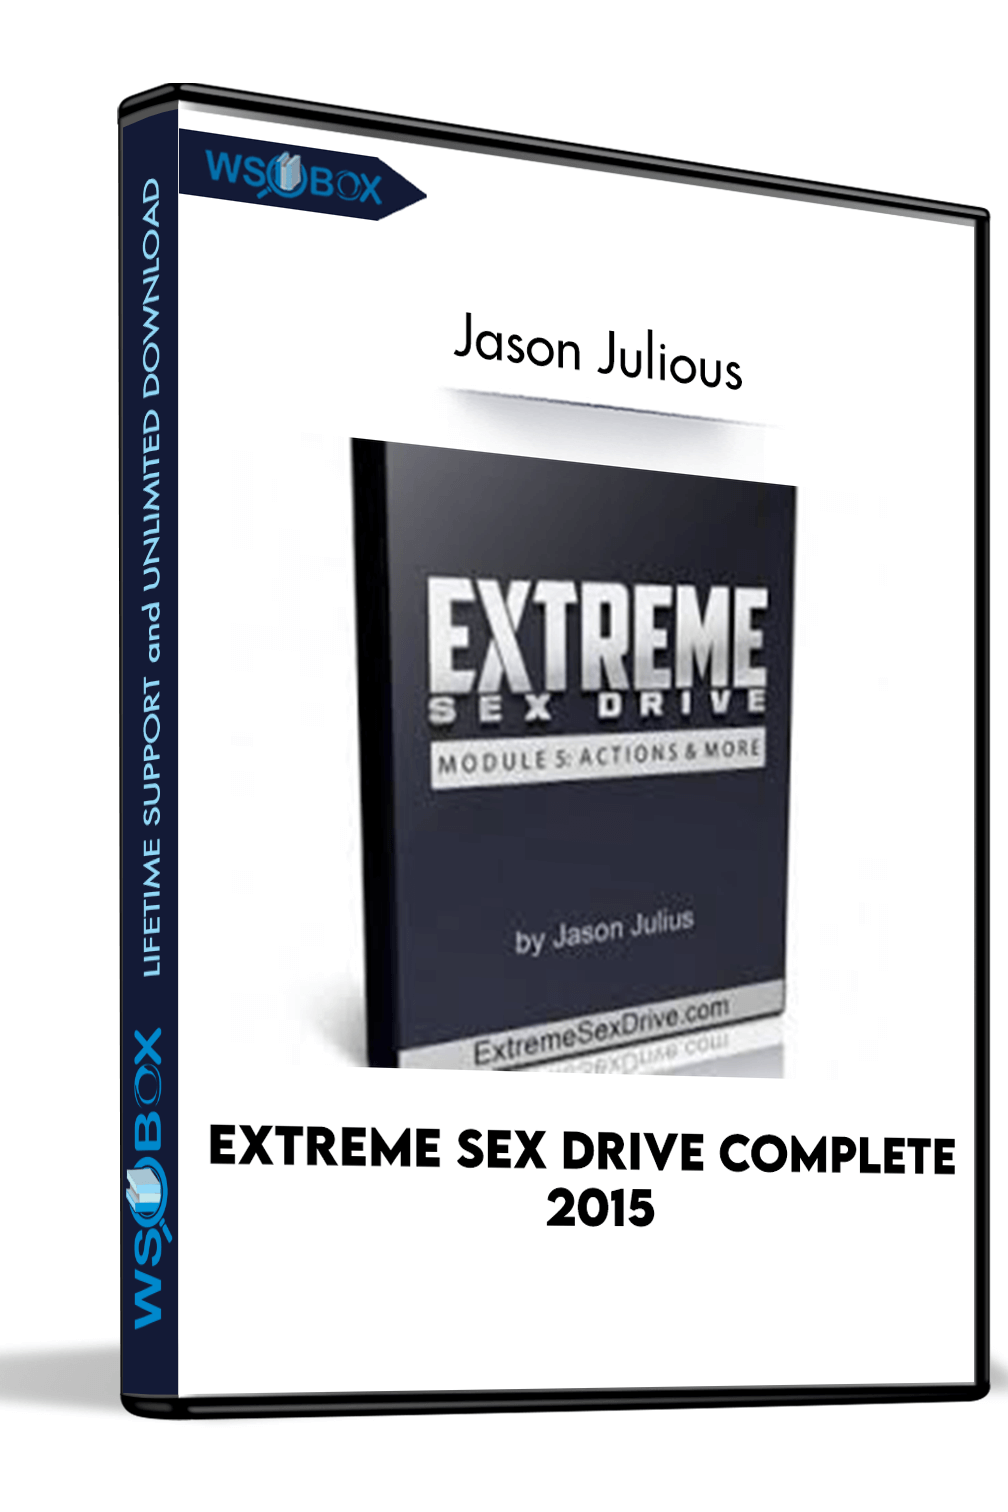 extreme-sex-drive-complete-2015-jason-julious